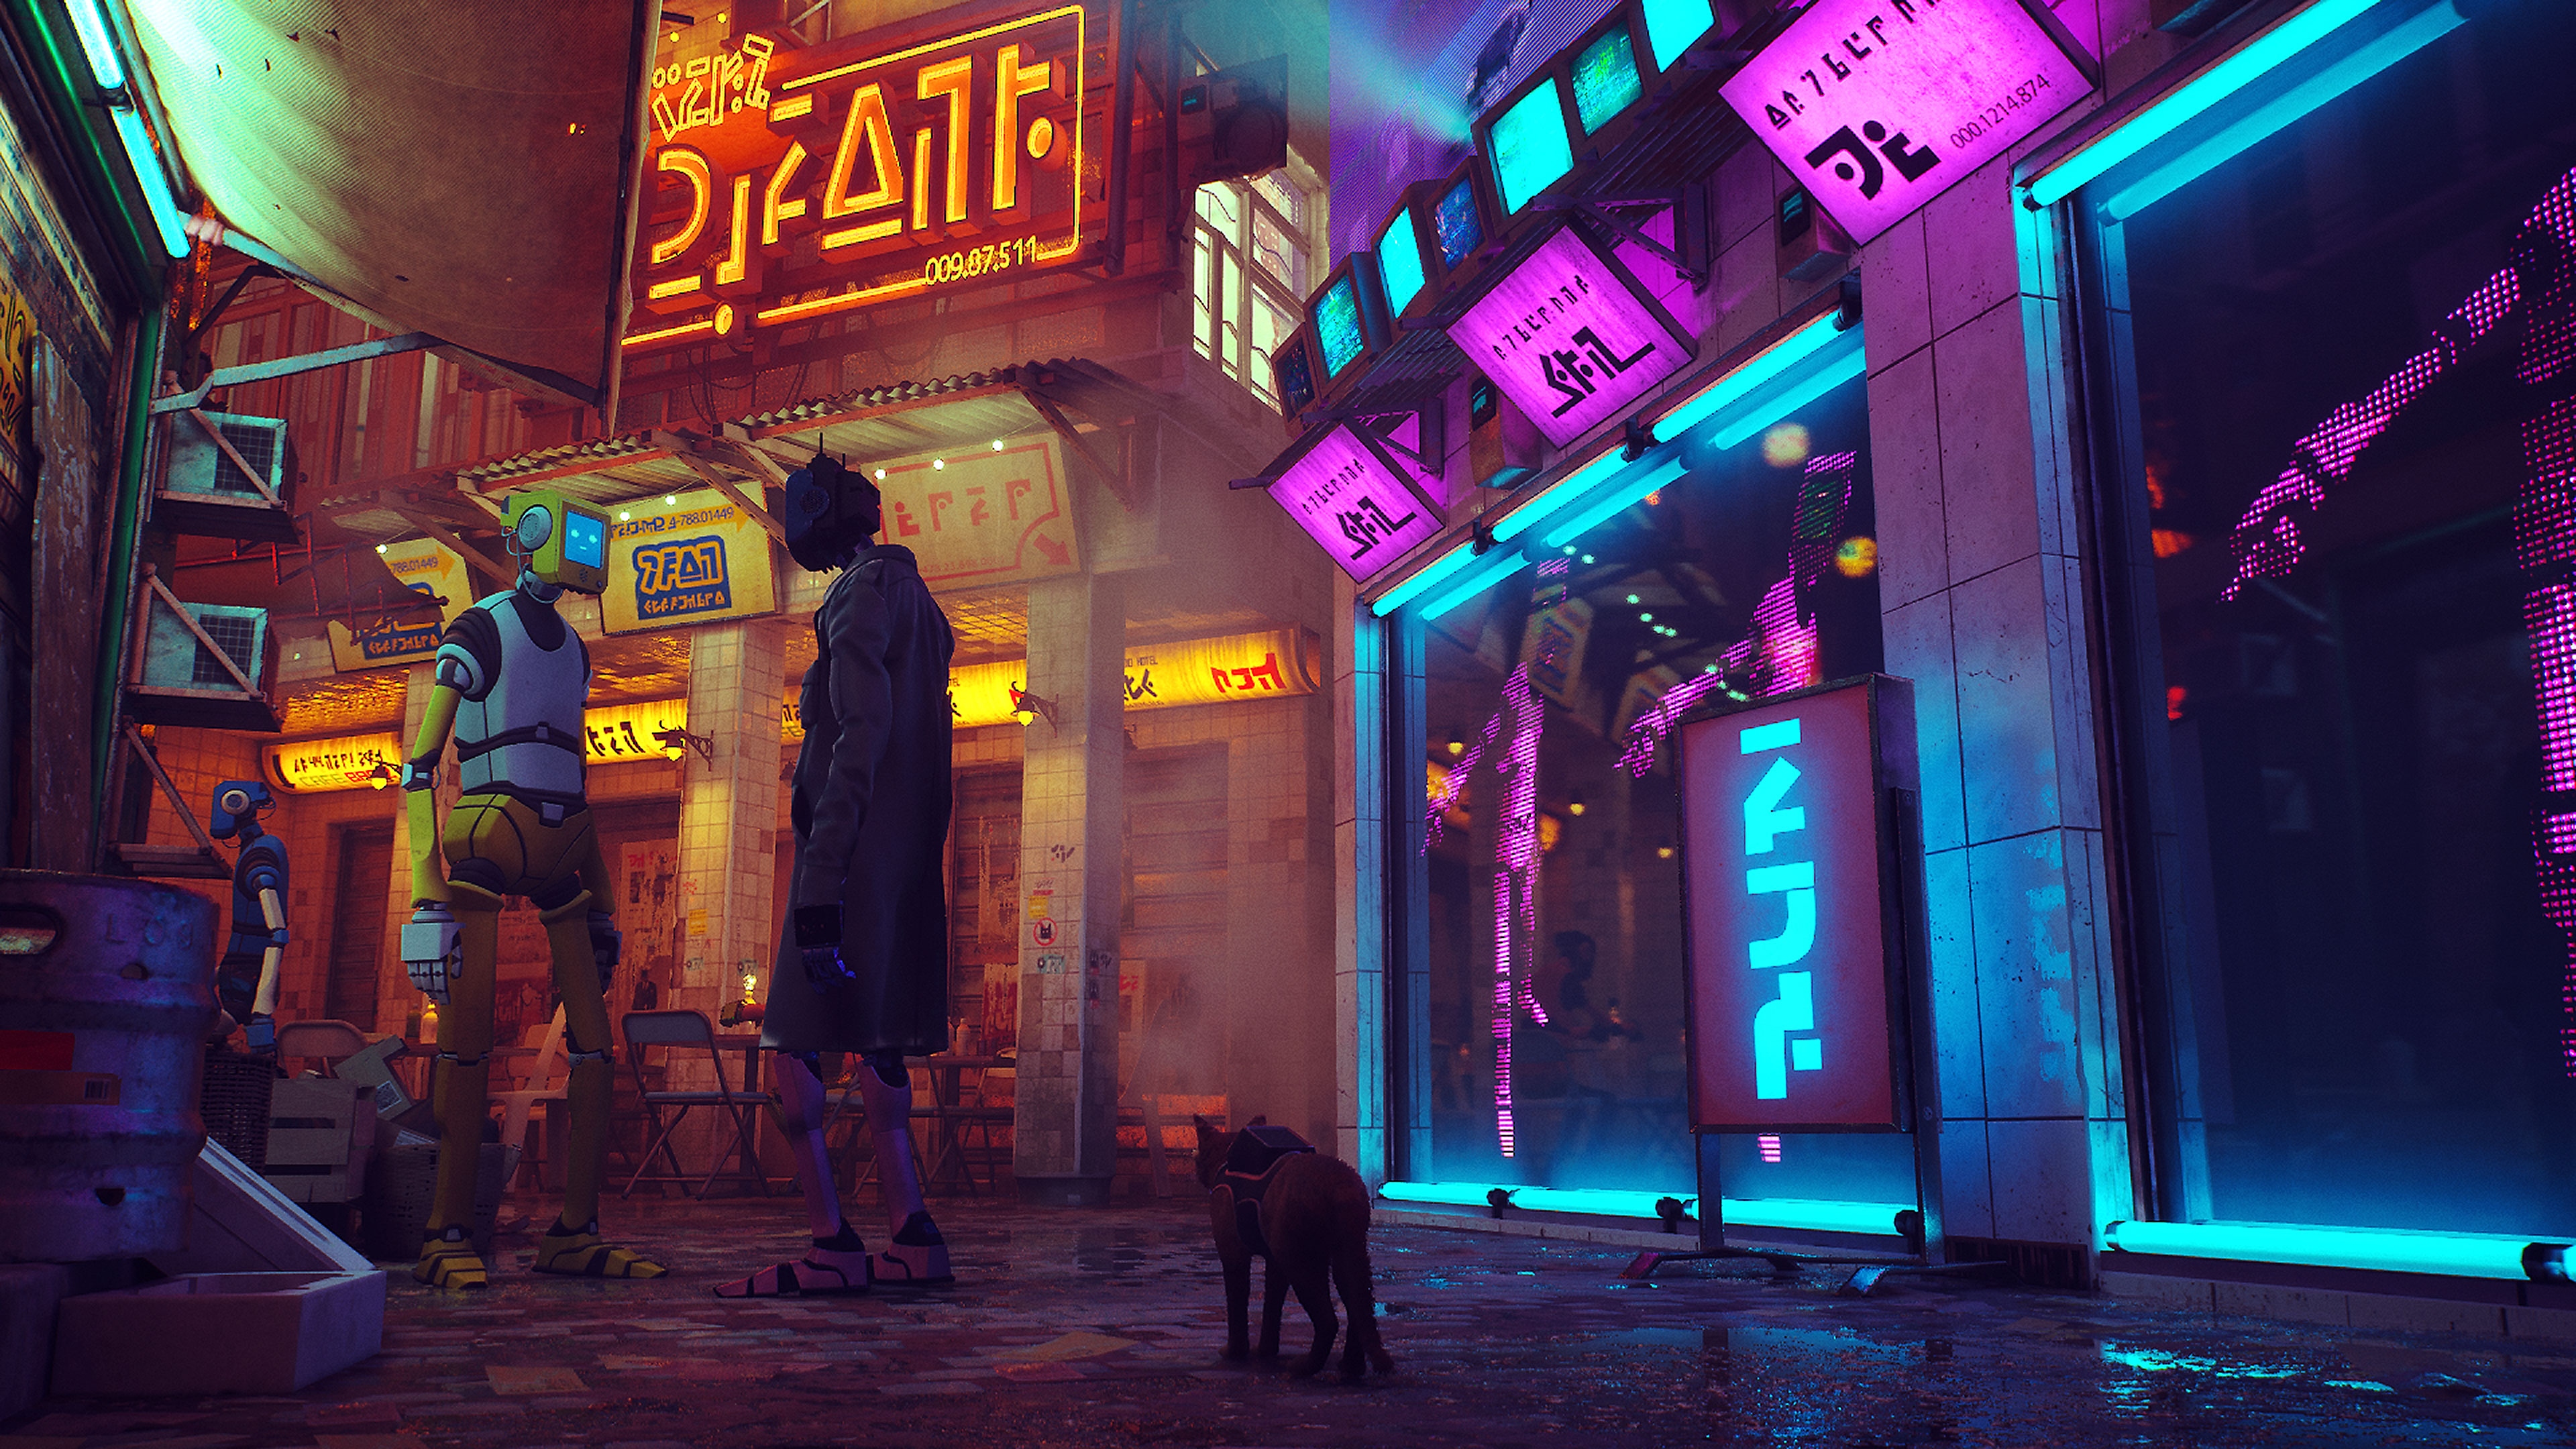 Stray – kuvakaappaus kissasta kävelemässä neonvaloin valaistulla kadulla